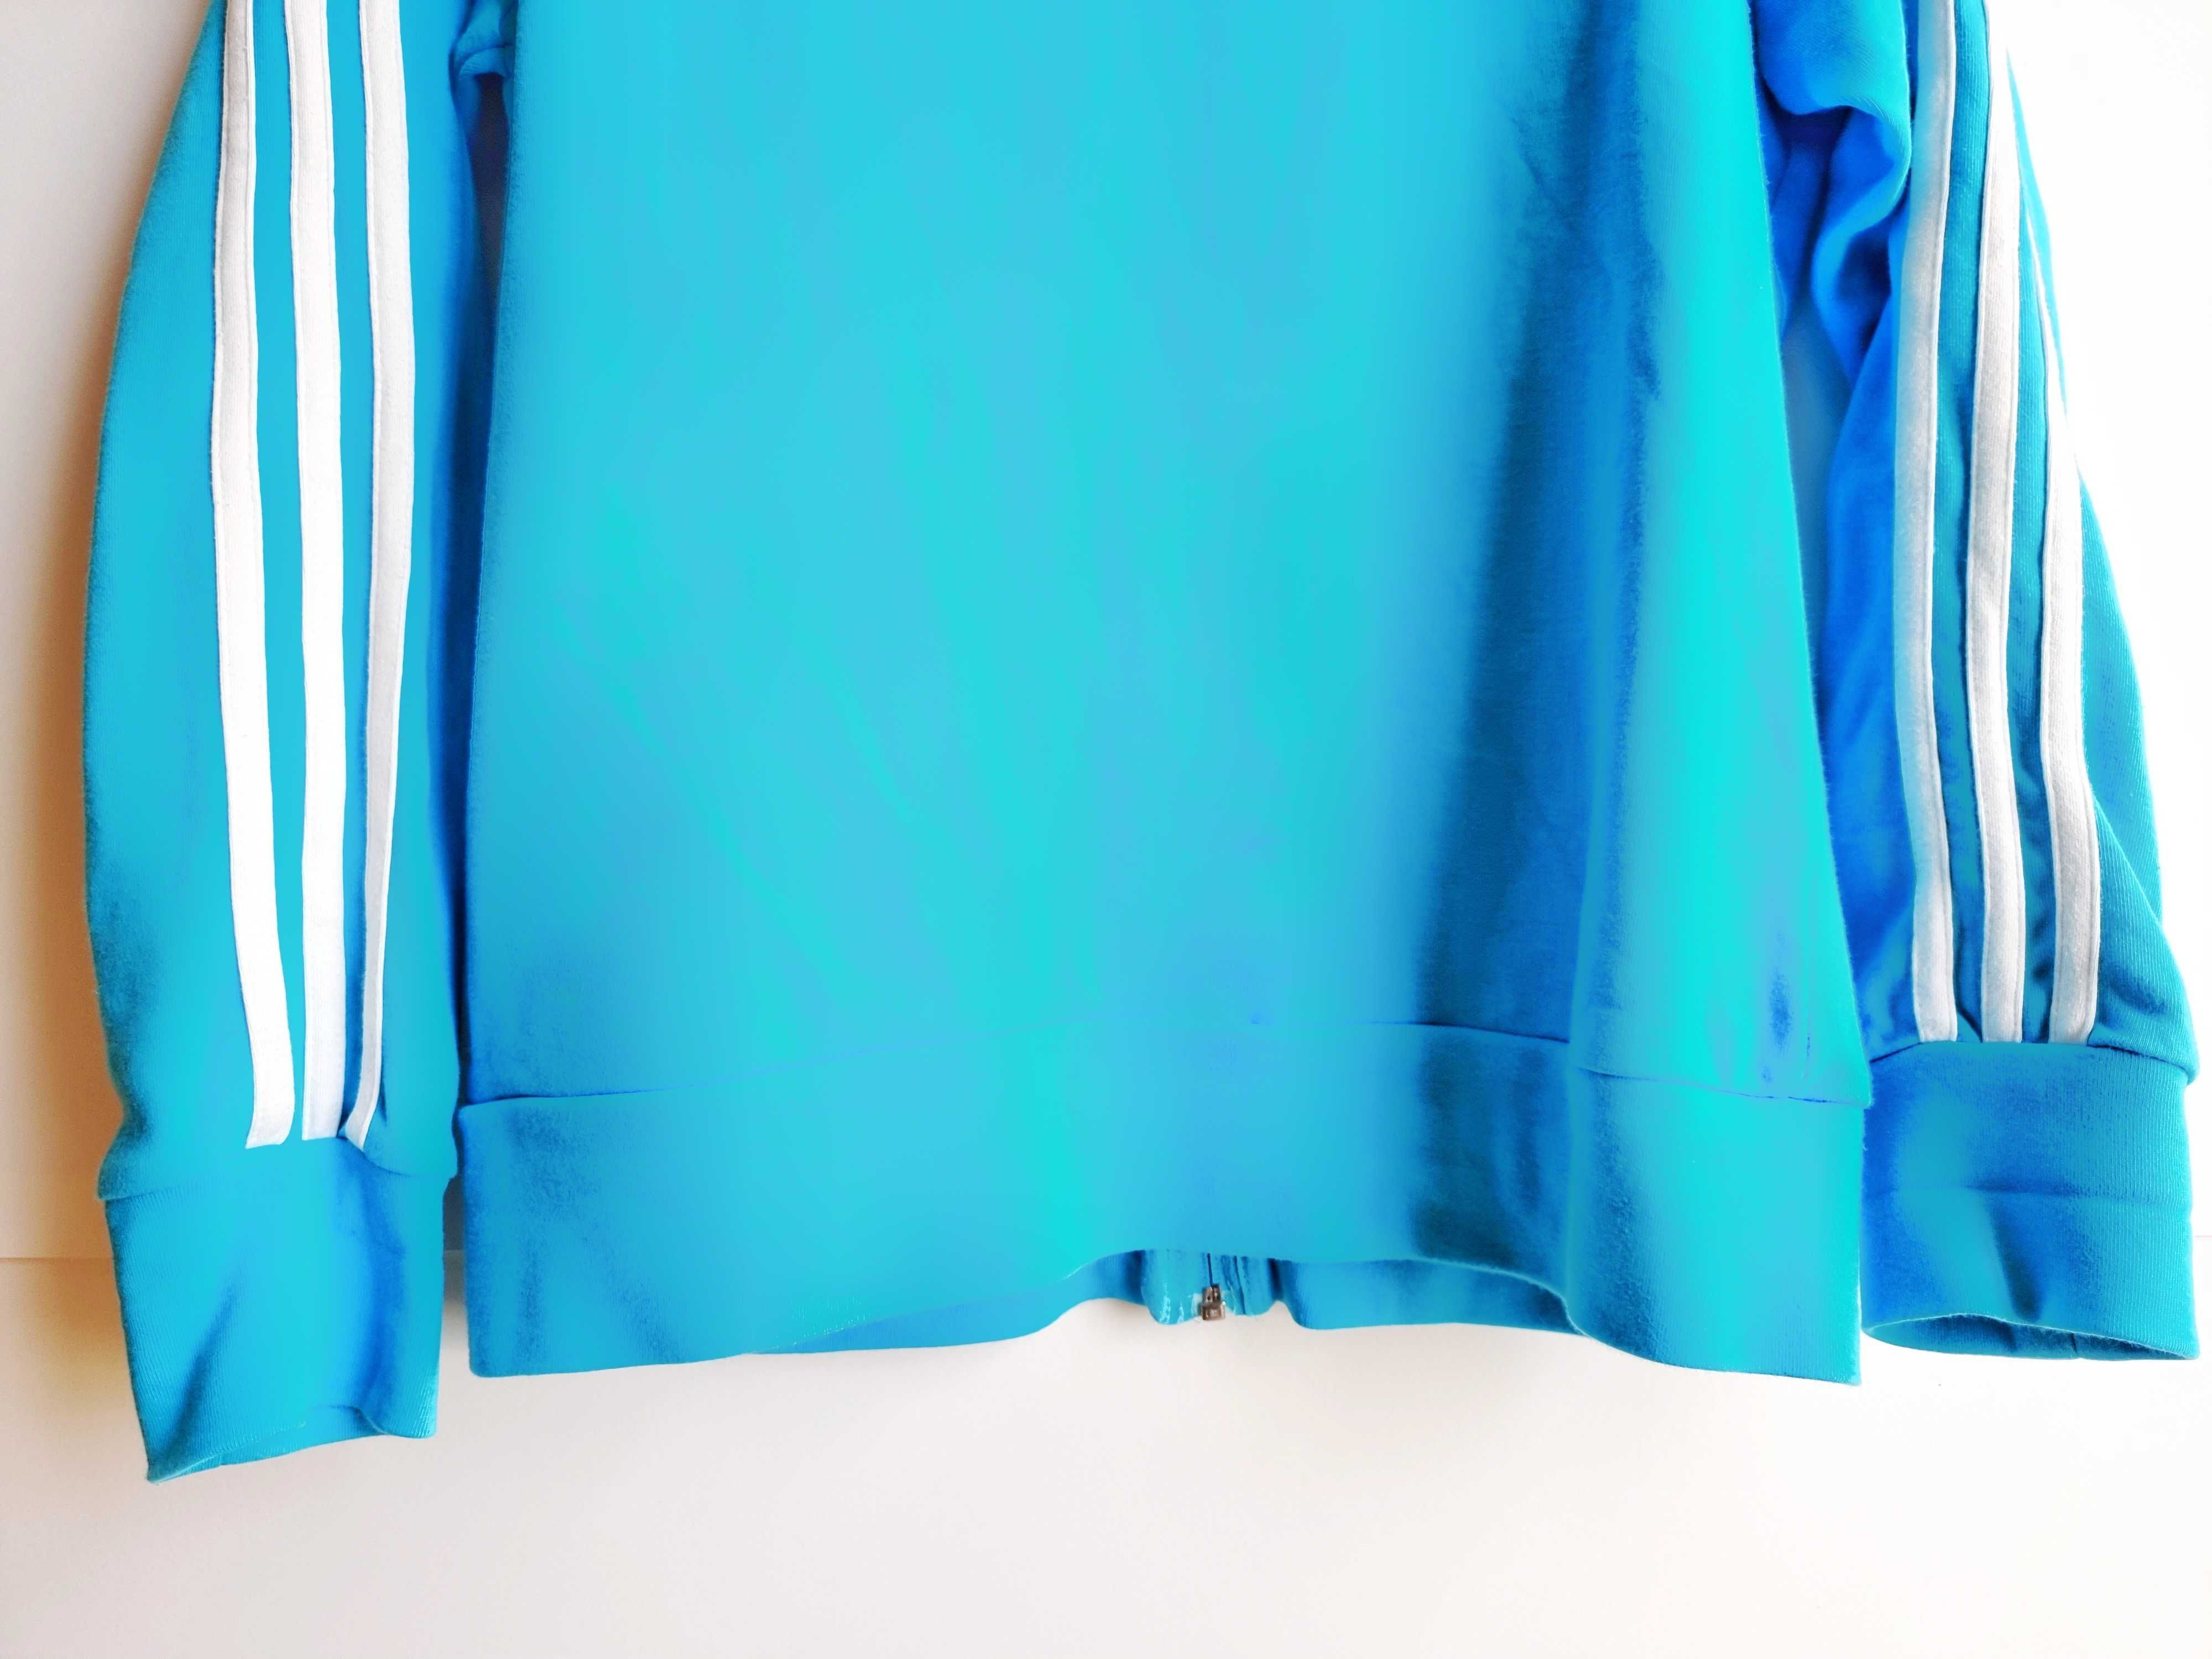 Fato de treino Adidas original azul turquesa